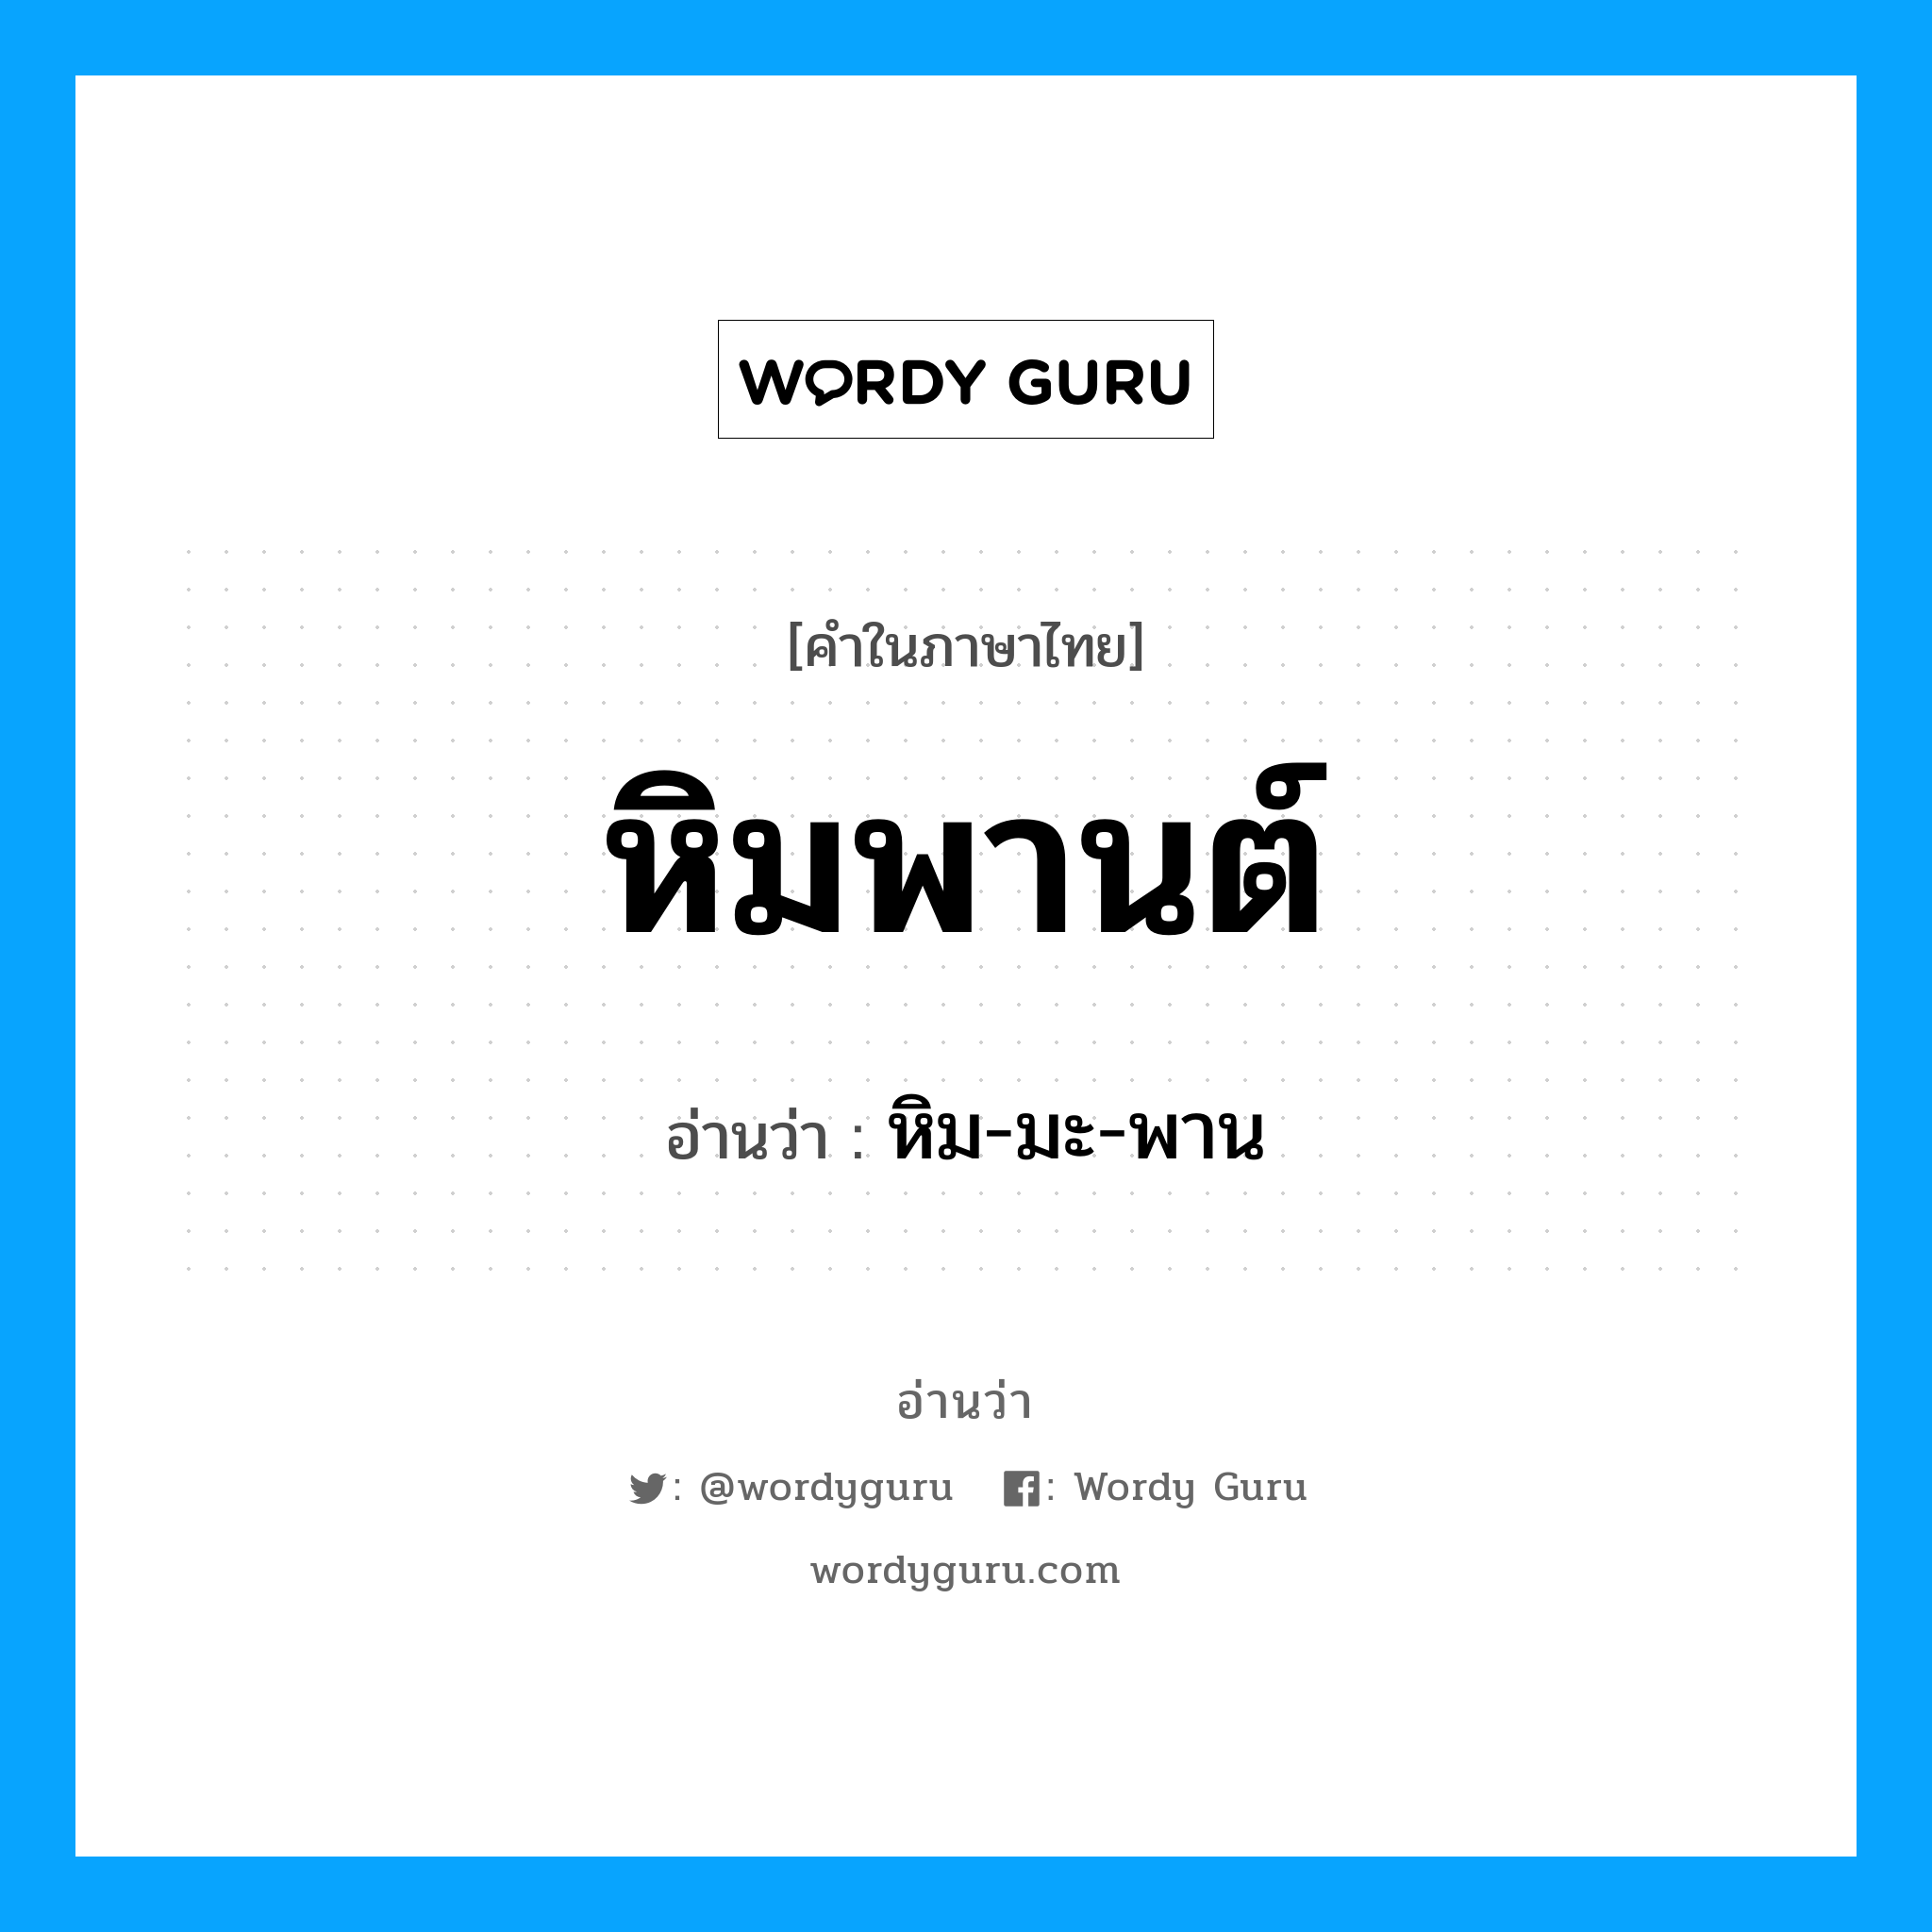 หิม-มะ-พาน เป็นคำอ่านของคำไหน?, คำในภาษาไทย หิม-มะ-พาน อ่านว่า หิมพานต์